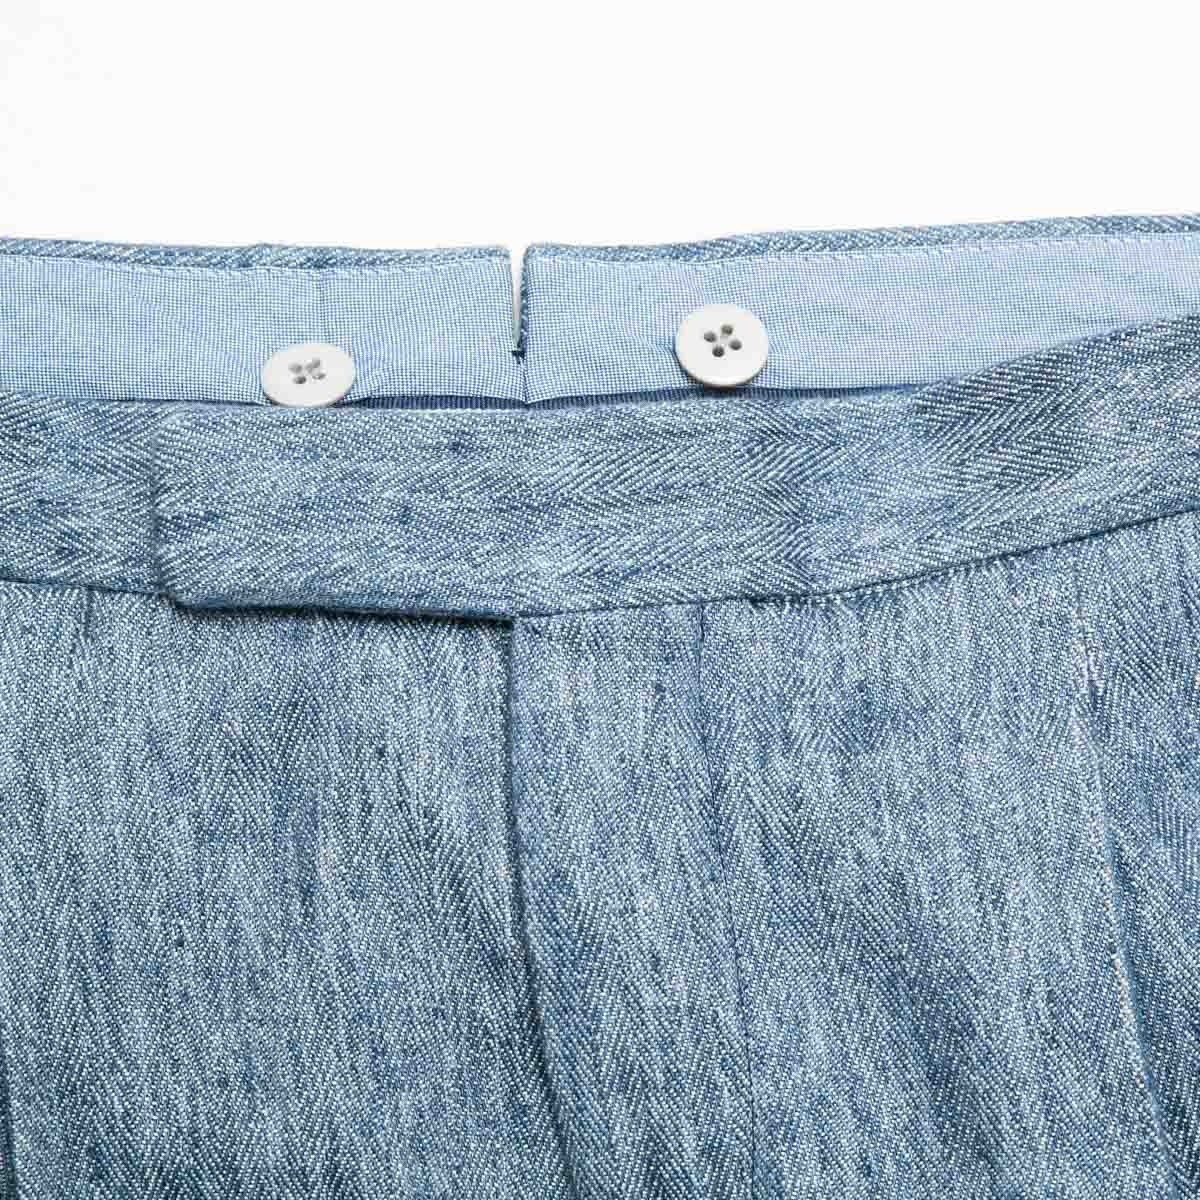 pantalon-a-pinces-bleu-chevron-pour-homme-detail-tissu